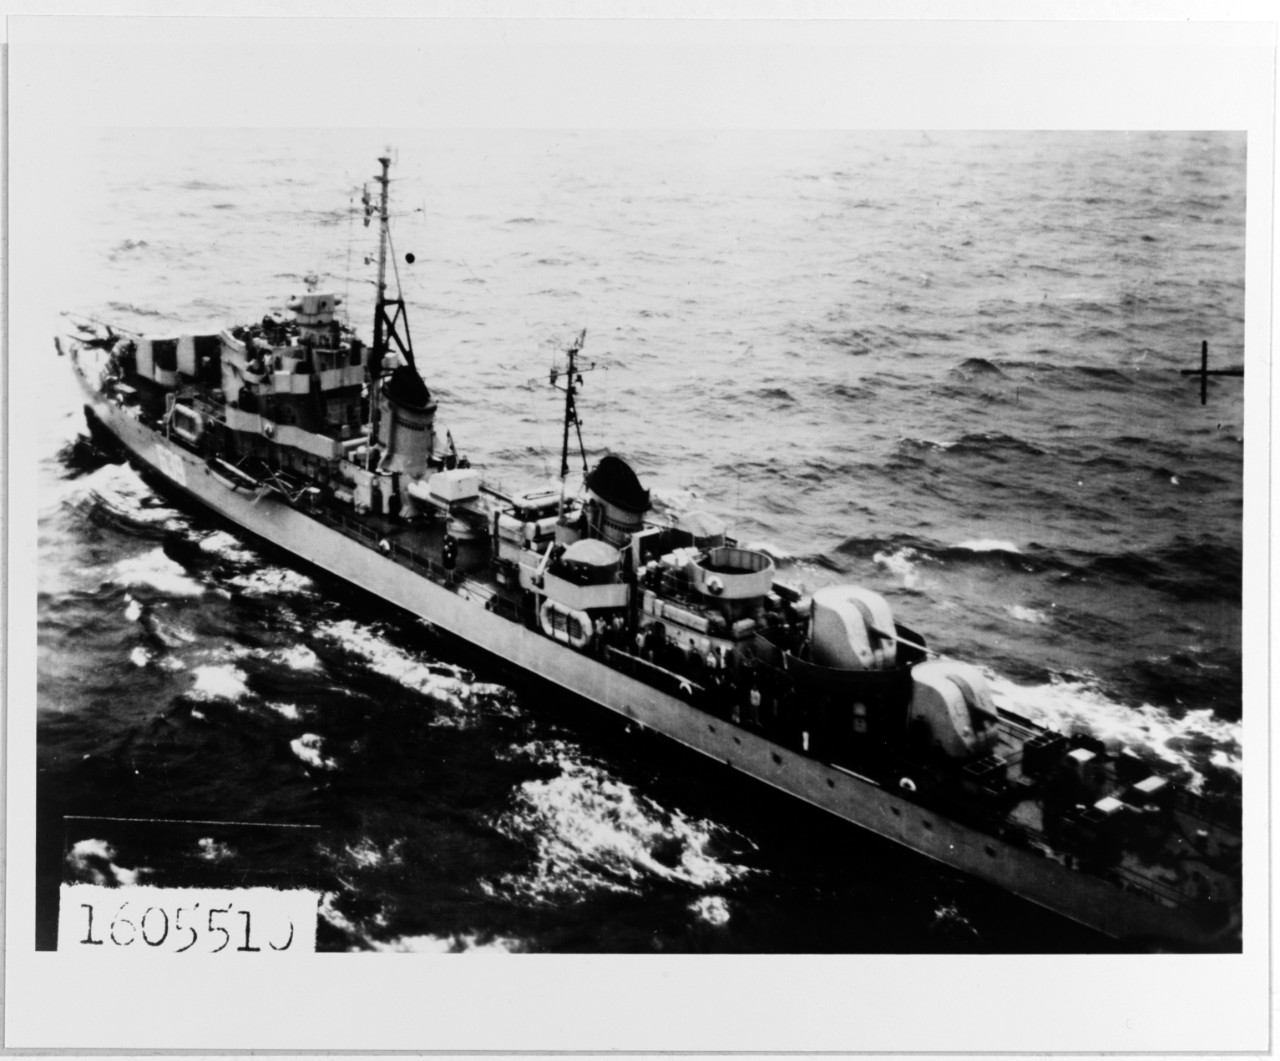 "Kola" class ocean escort